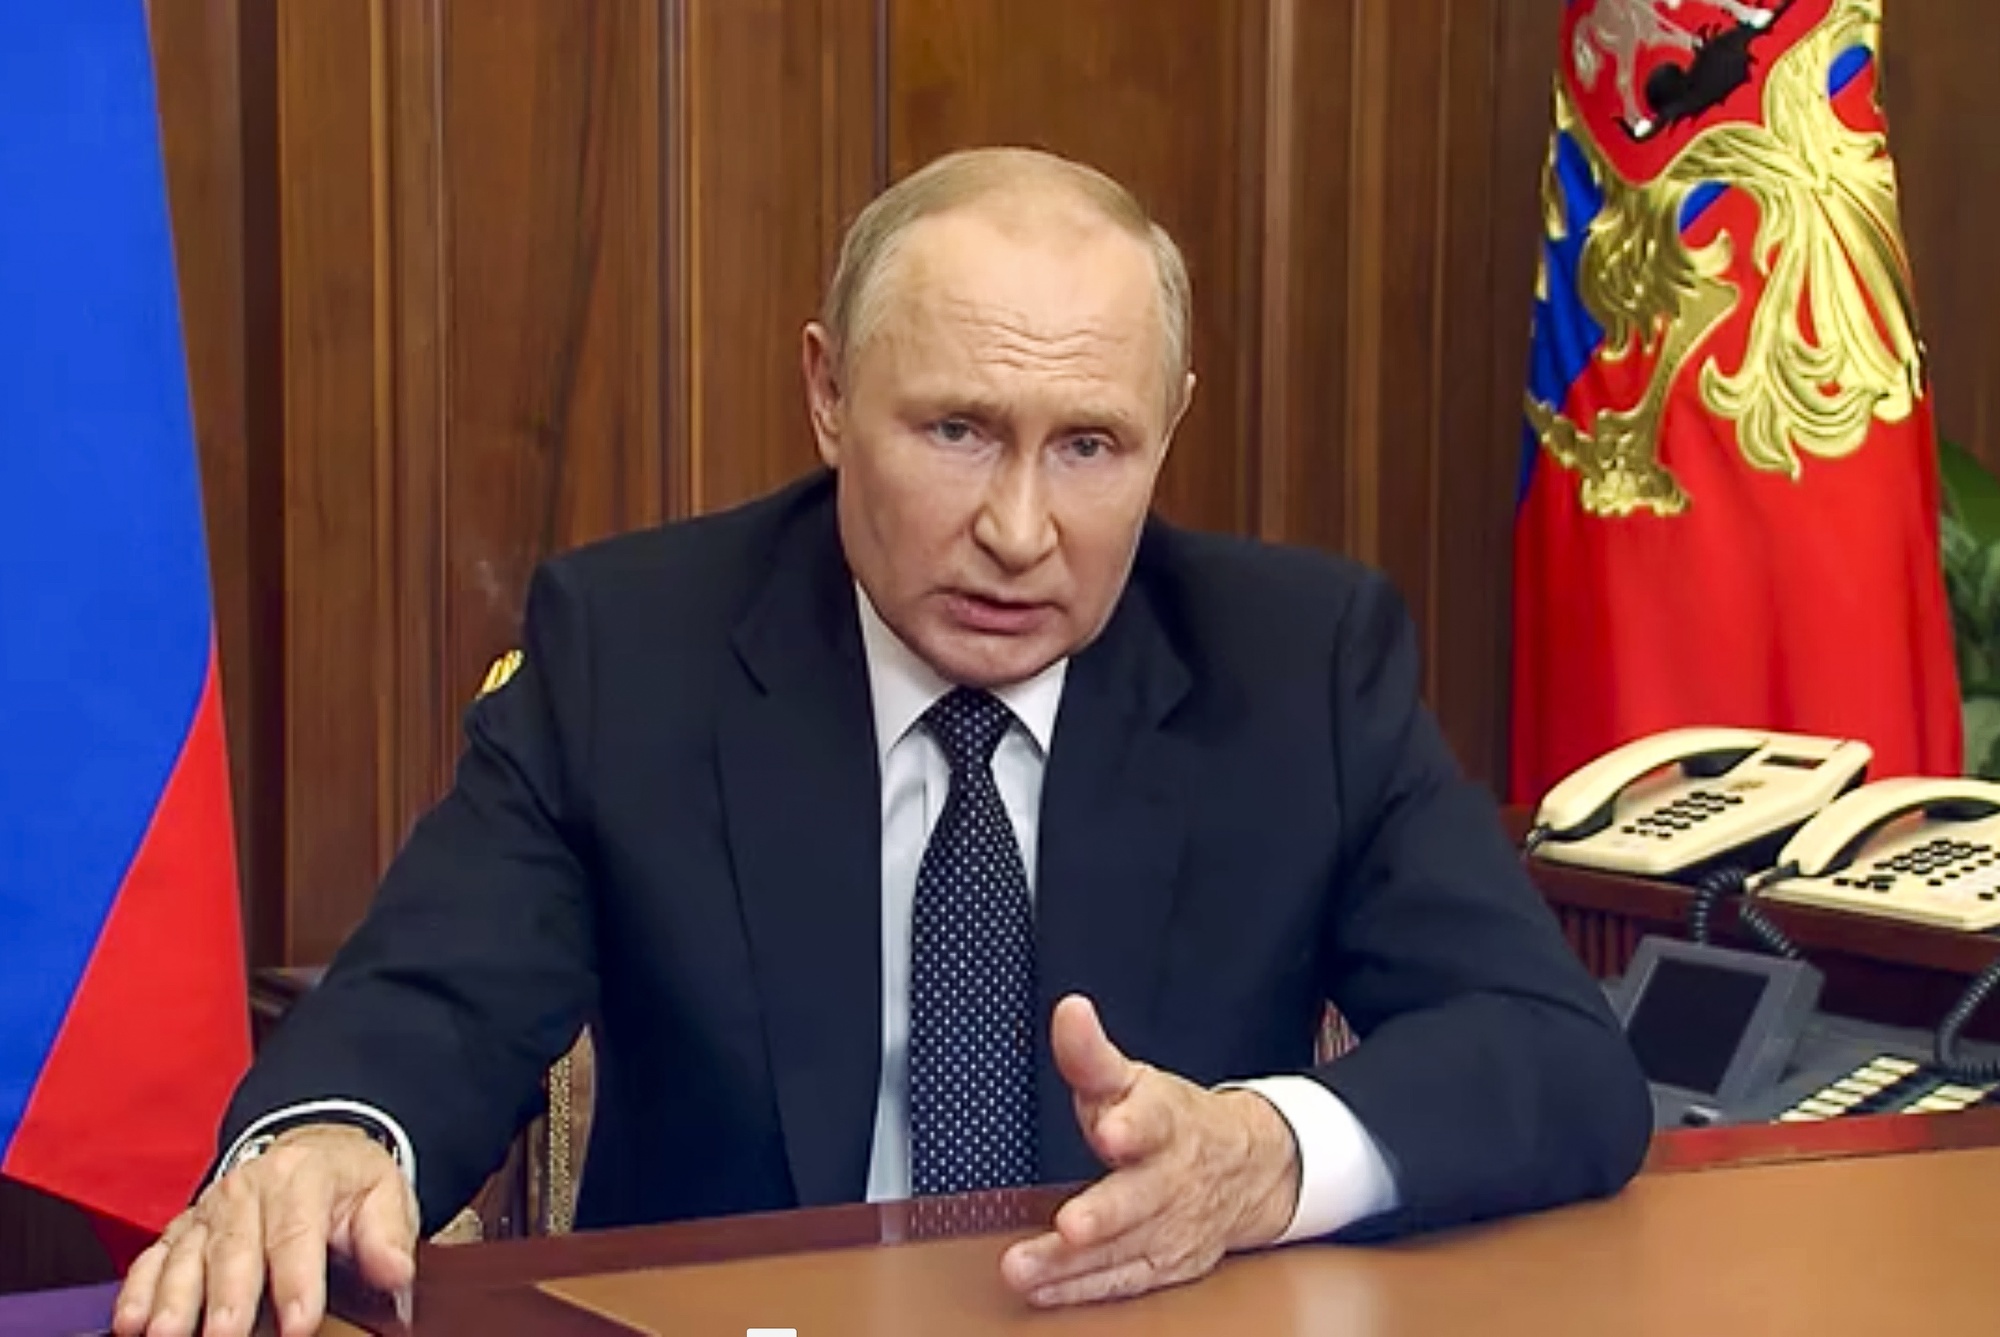 Egy orosz ellenzéki képviselő feljelentette Putyint a háború szó használata miatt